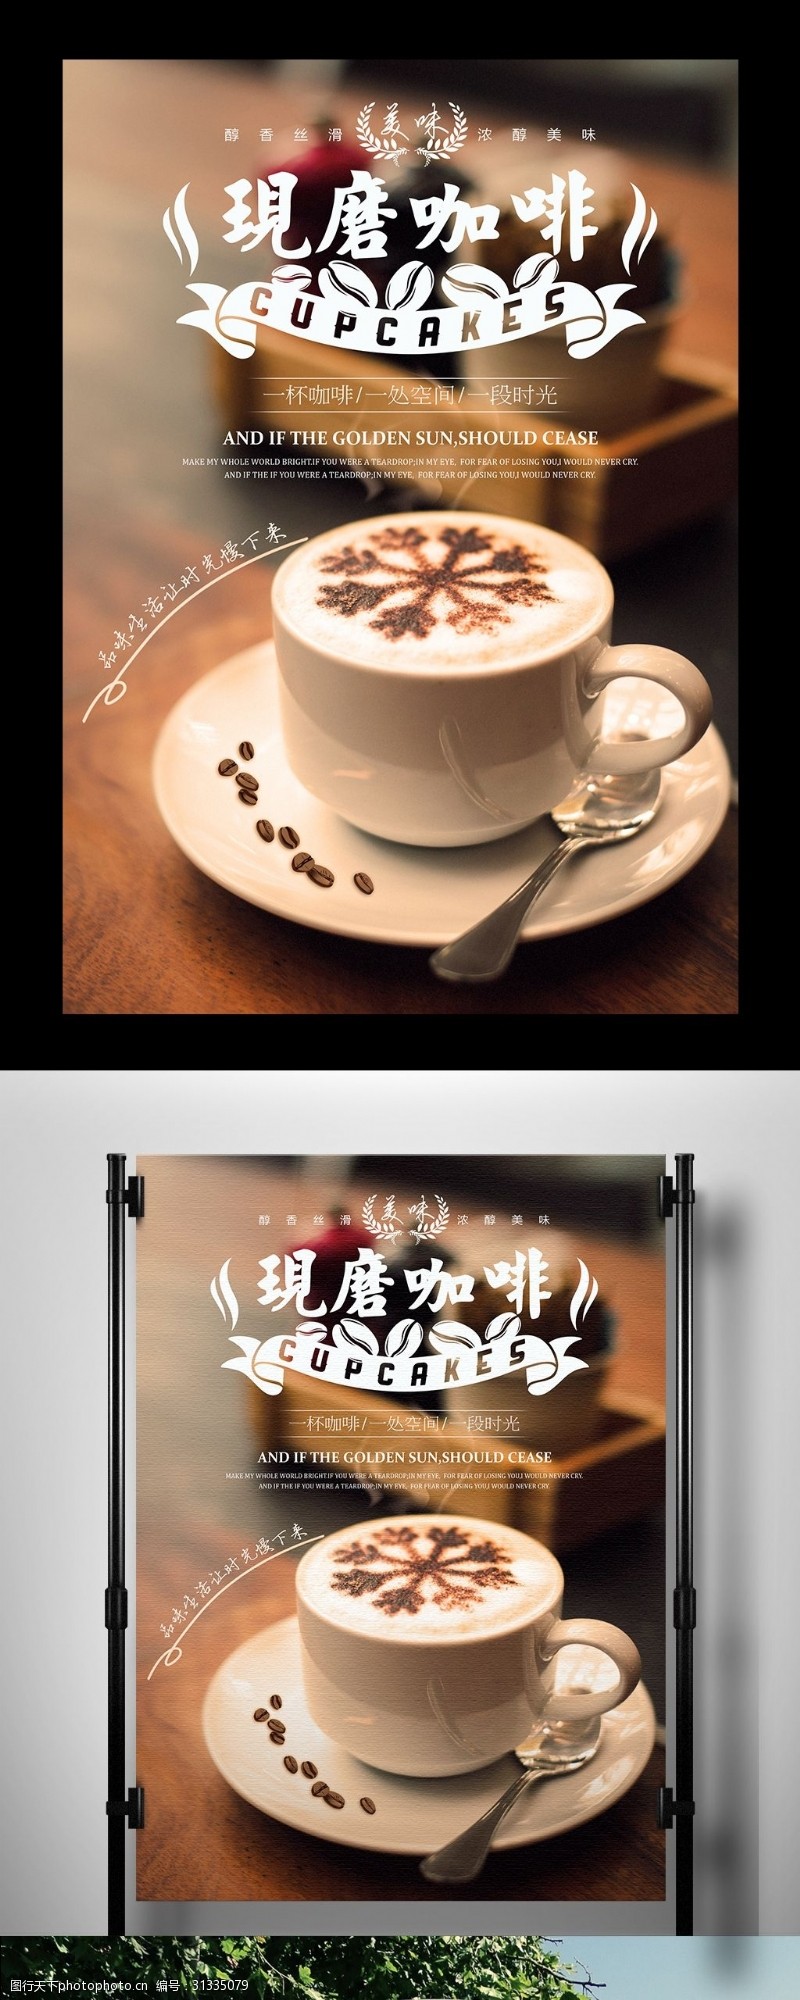 蛋糕套餐海报下午茶海报甜点咖啡蛋糕传单海报设计